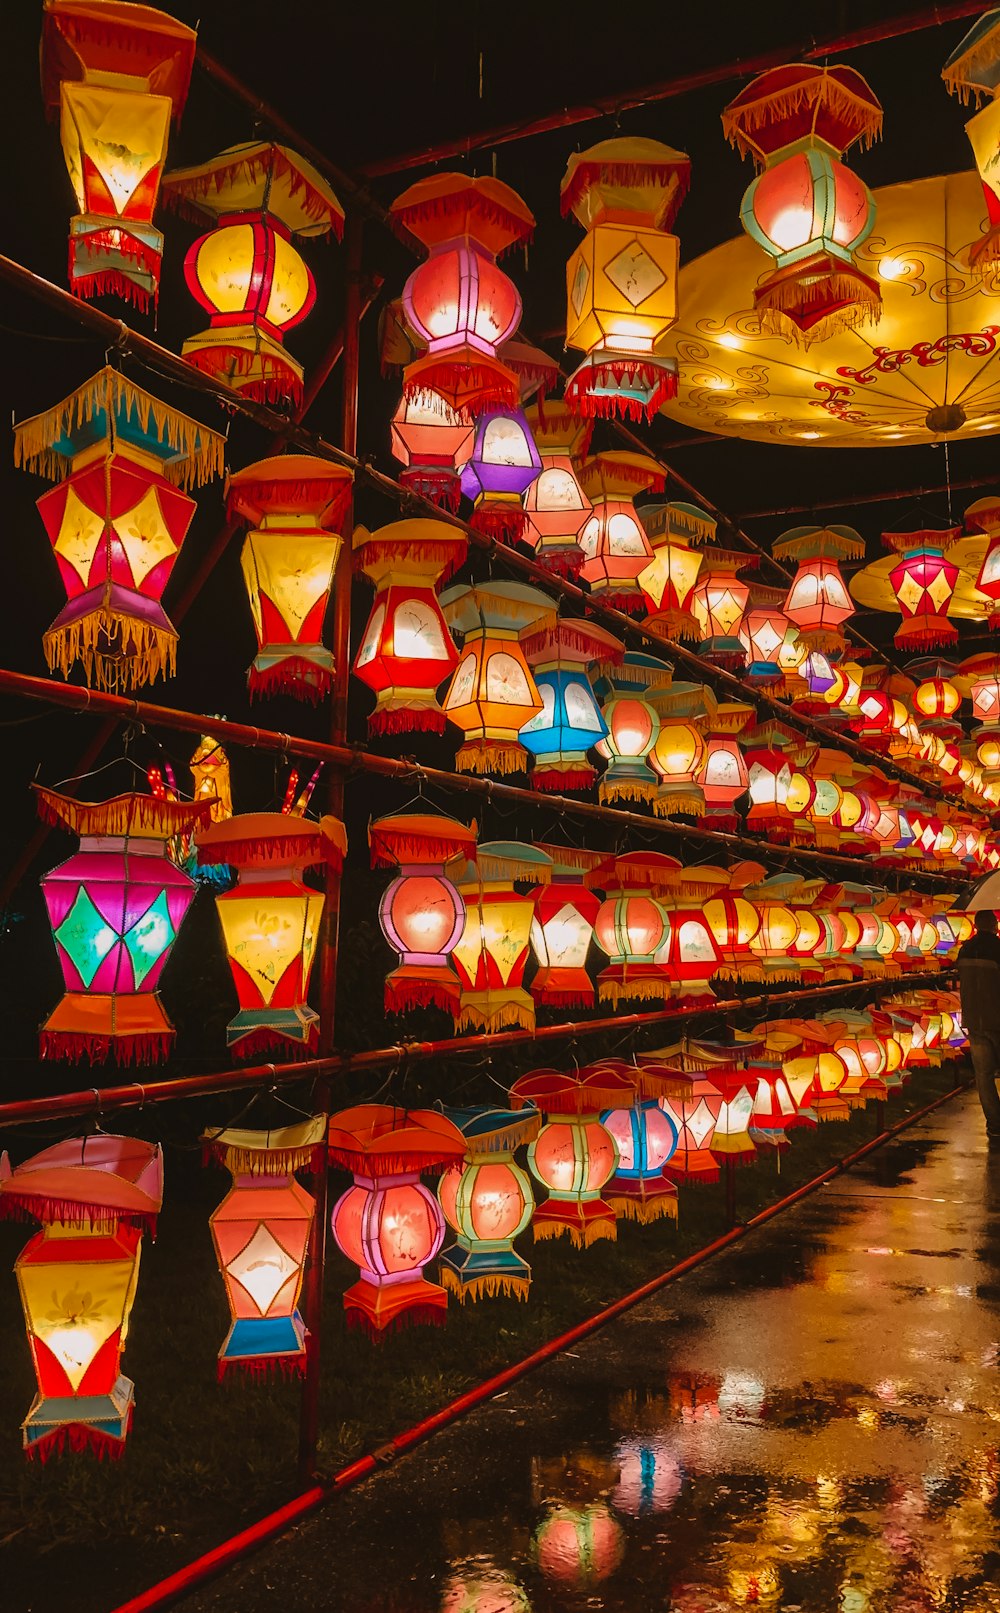 Une pièce remplie de nombreuses lanternes illuminées